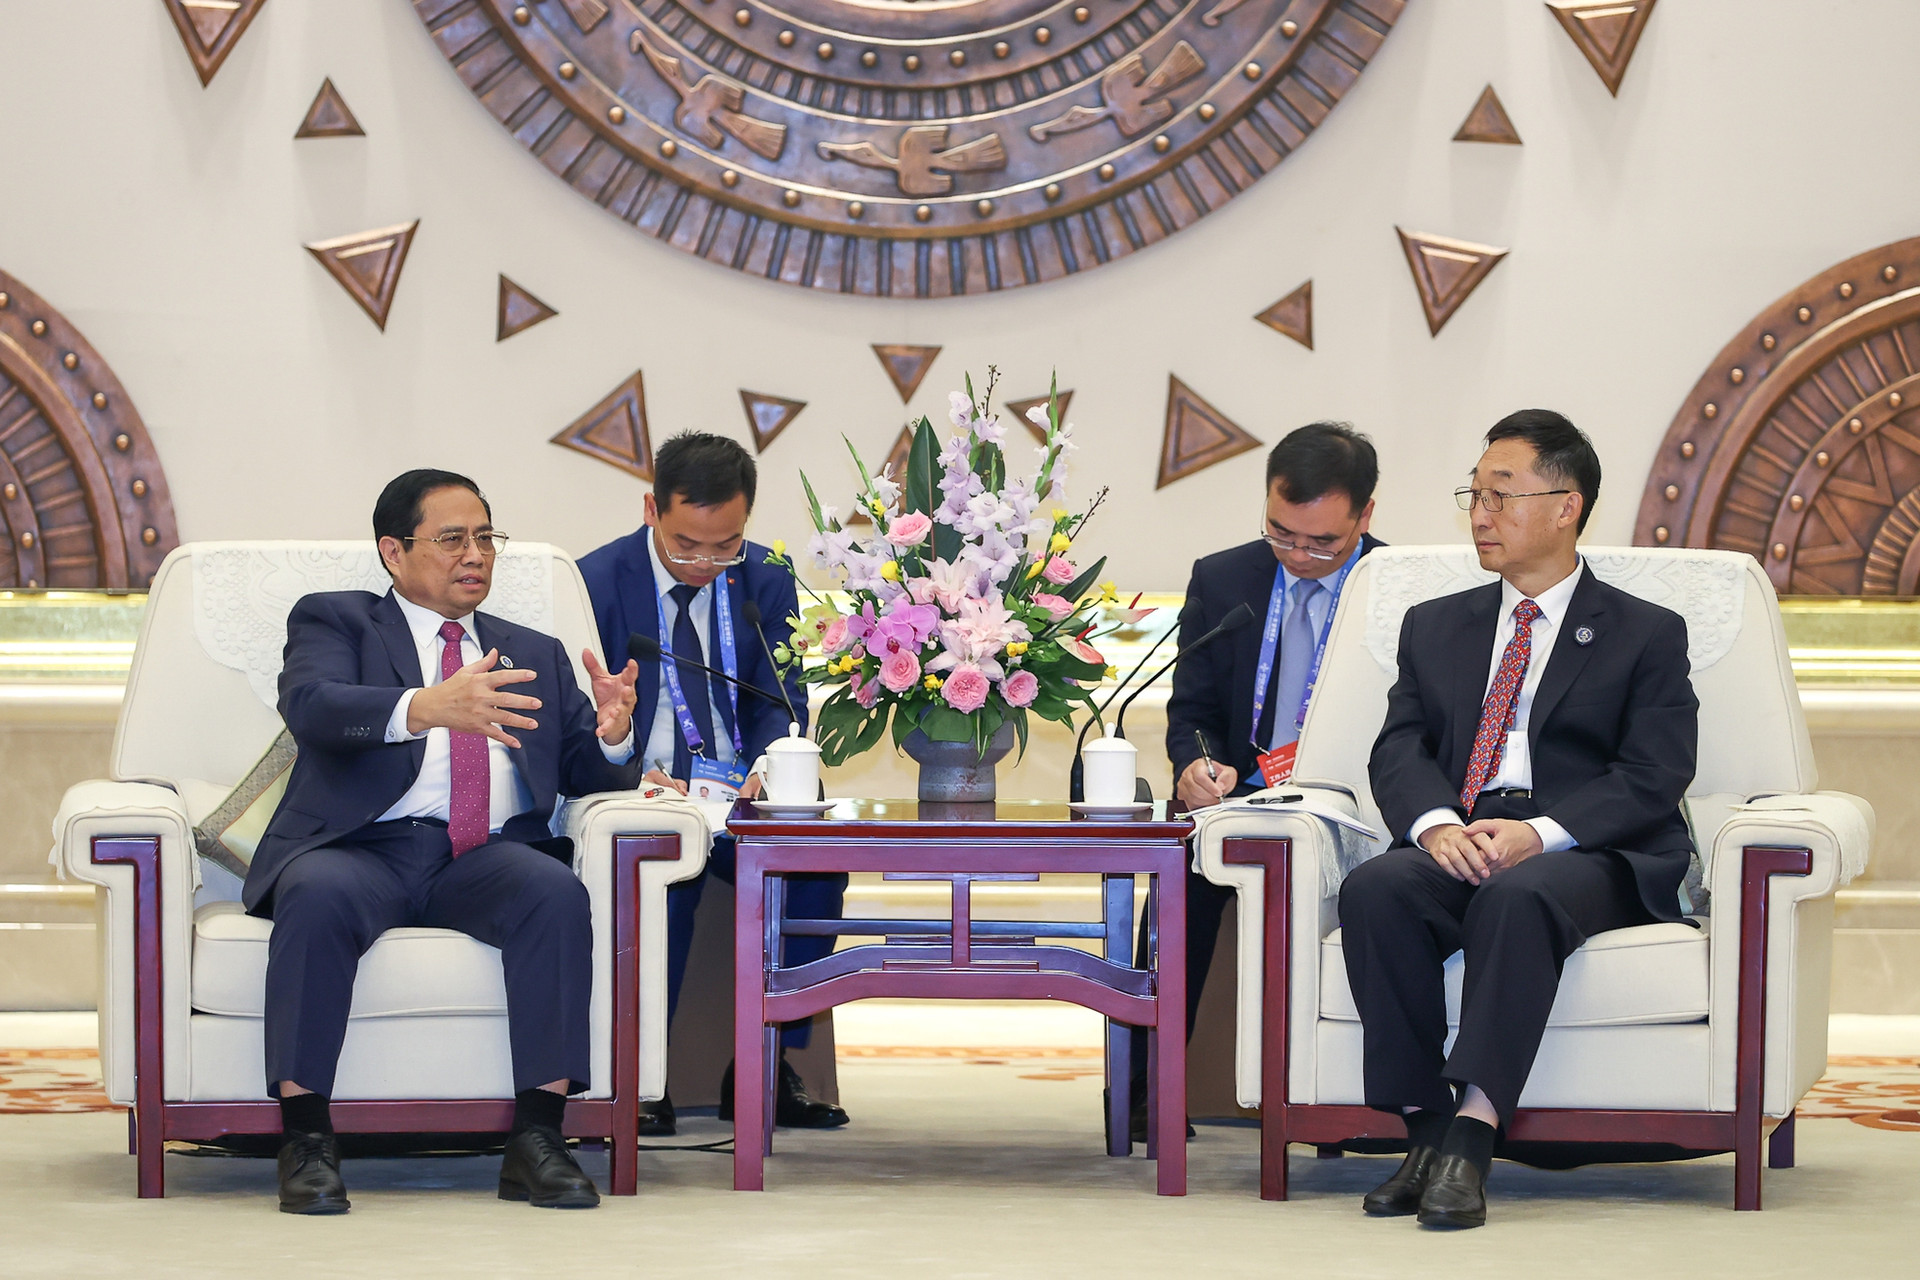 Chùm ảnh: Thủ tướng Phạm Minh Chính bắt đầu chuyến công tác tại Trung Quốc - Ảnh 8.